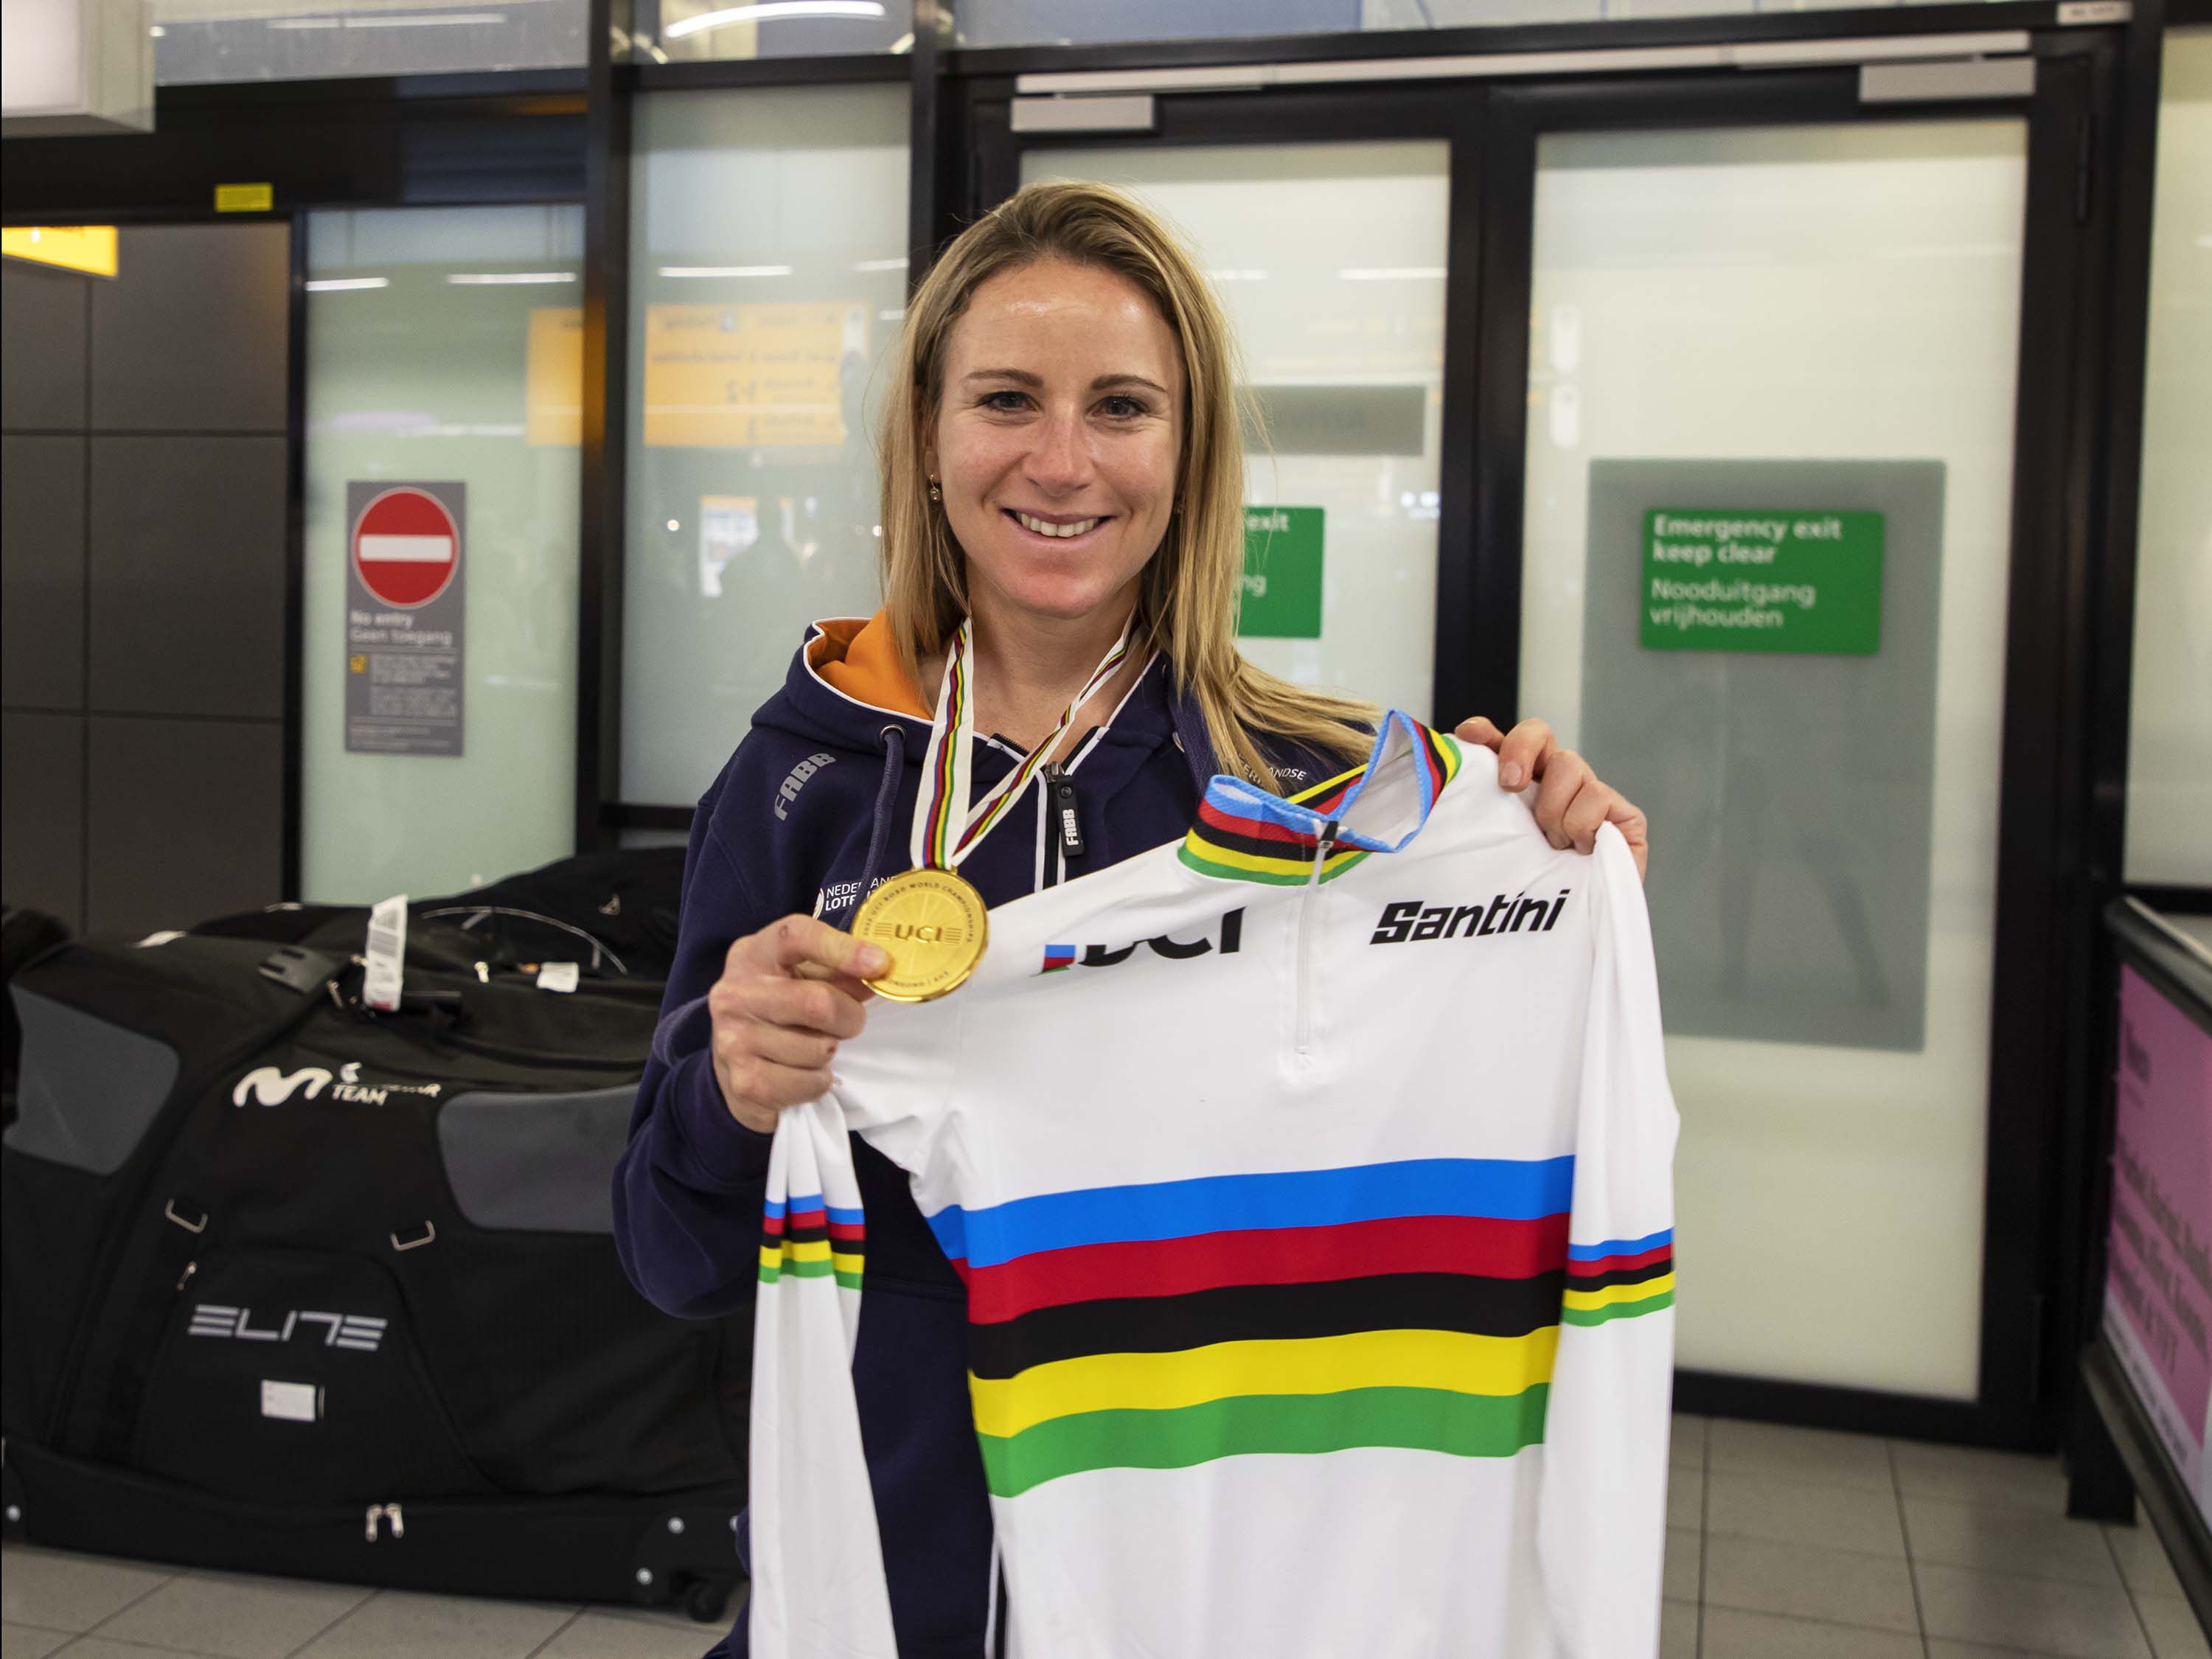 La ciclista Annemiek van Vleuten no solo ganó medallas de oro y plata en los Juegos Olímpicos de Tokio 2020, sino también se coronó en cuatro ocasiones campeona del mundo de ciclismo. Tomada de redes sociales